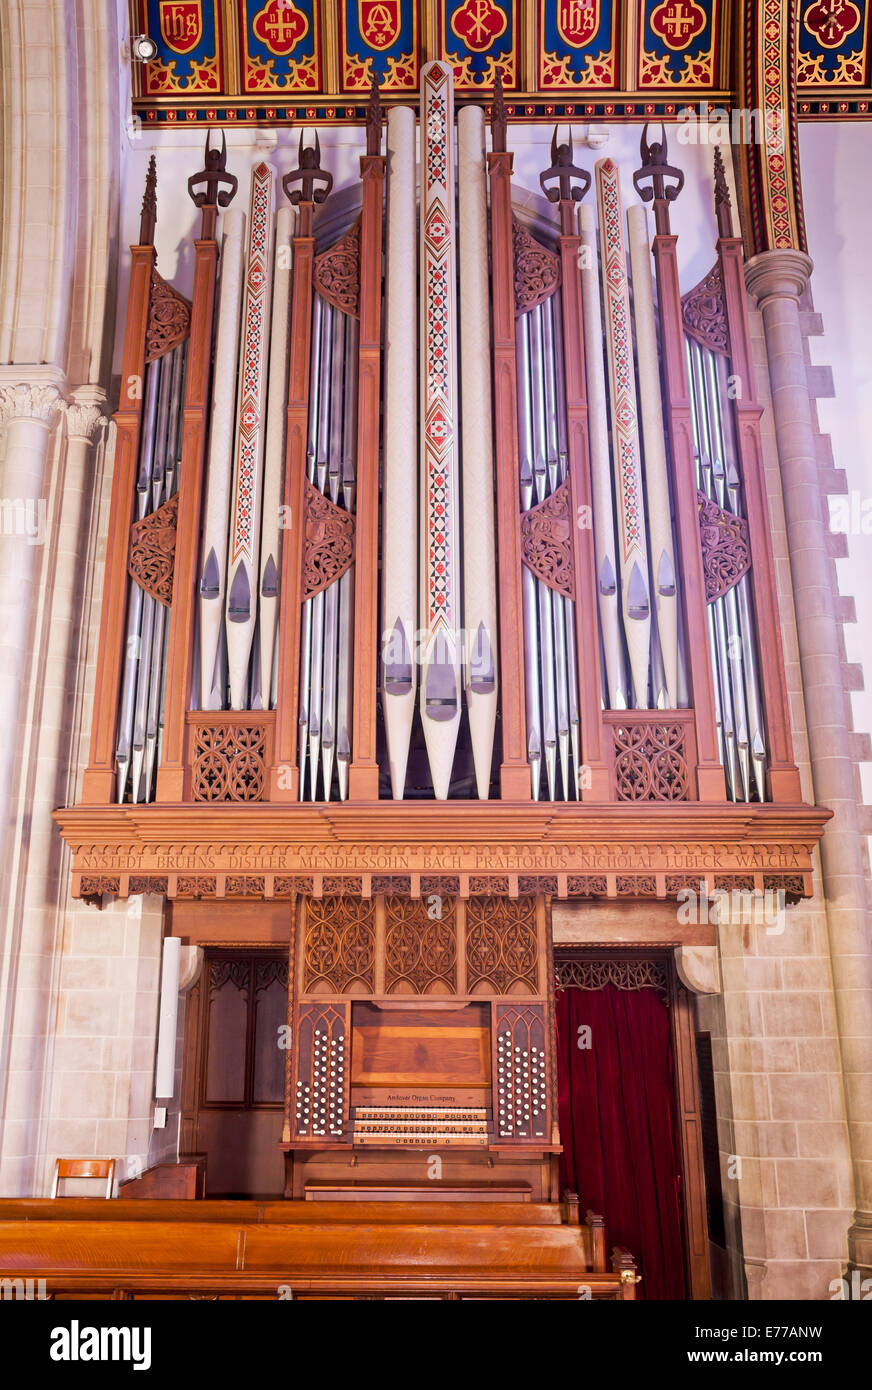 Eine Orgel in einer Kirche. Stockfoto